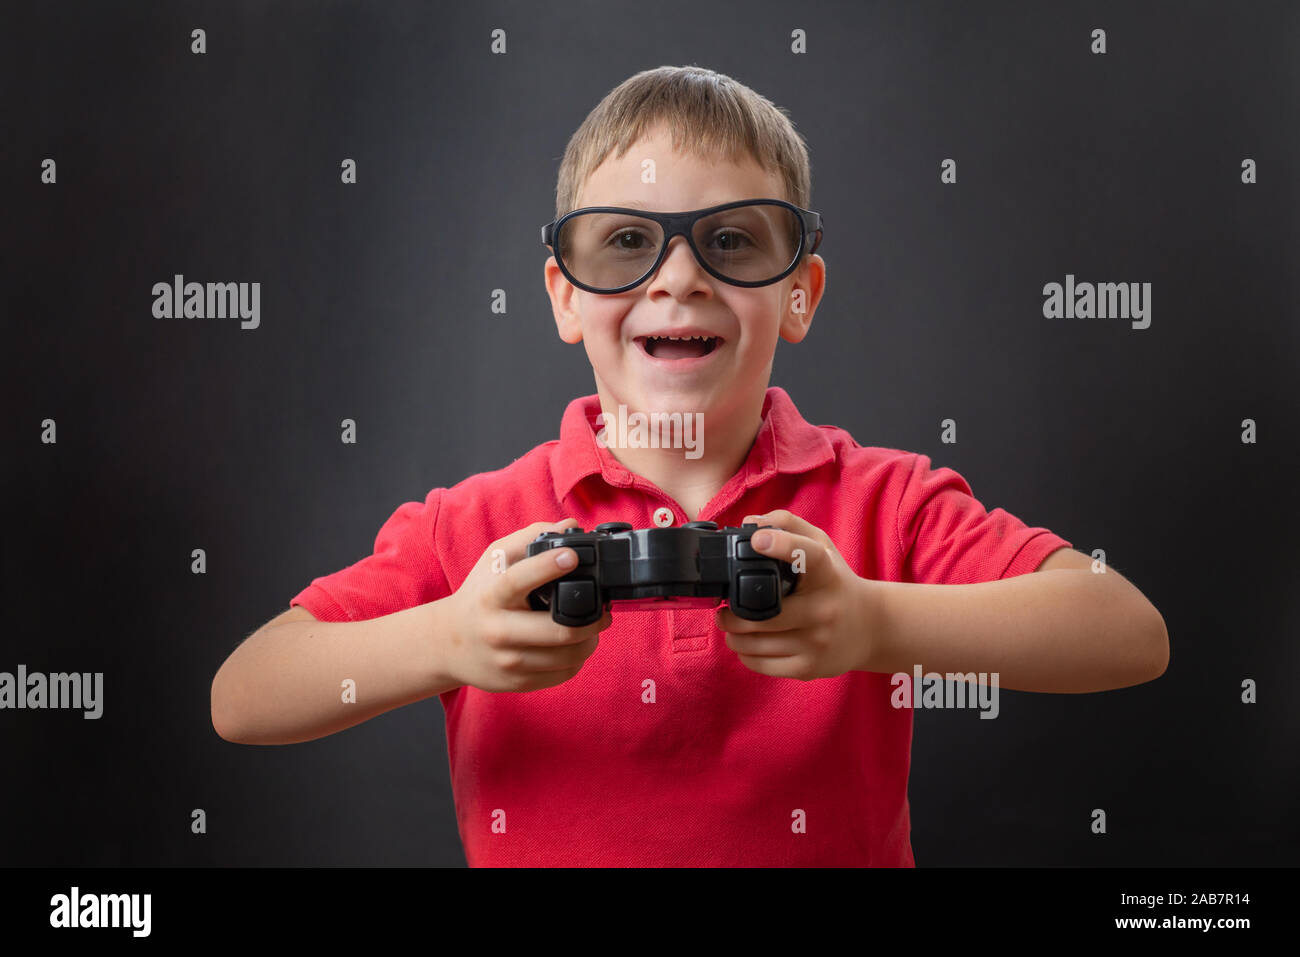 Der Junge lächelt mit 3 D-Brille und einem Gaming joypad in der Hand. Stockfoto